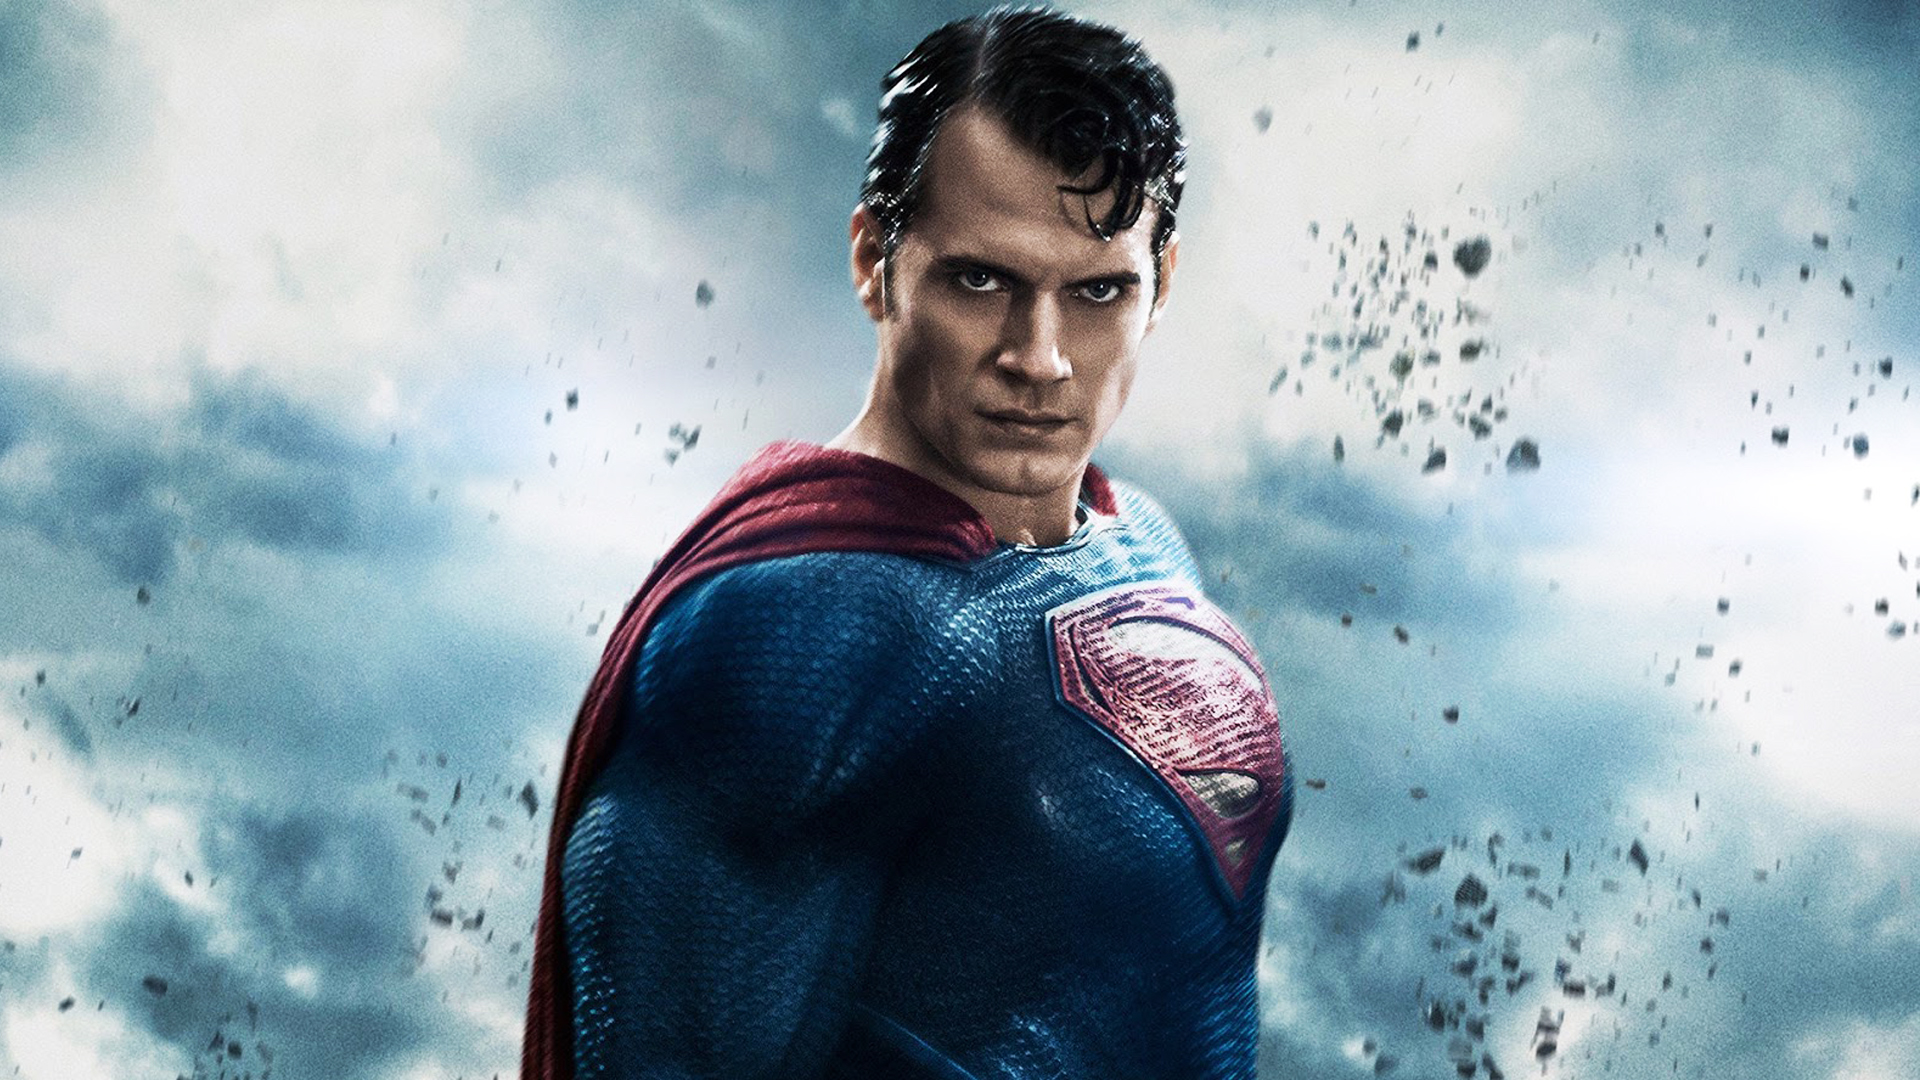 Henry Cavill explains his 'Black Adam' cameo as Superman